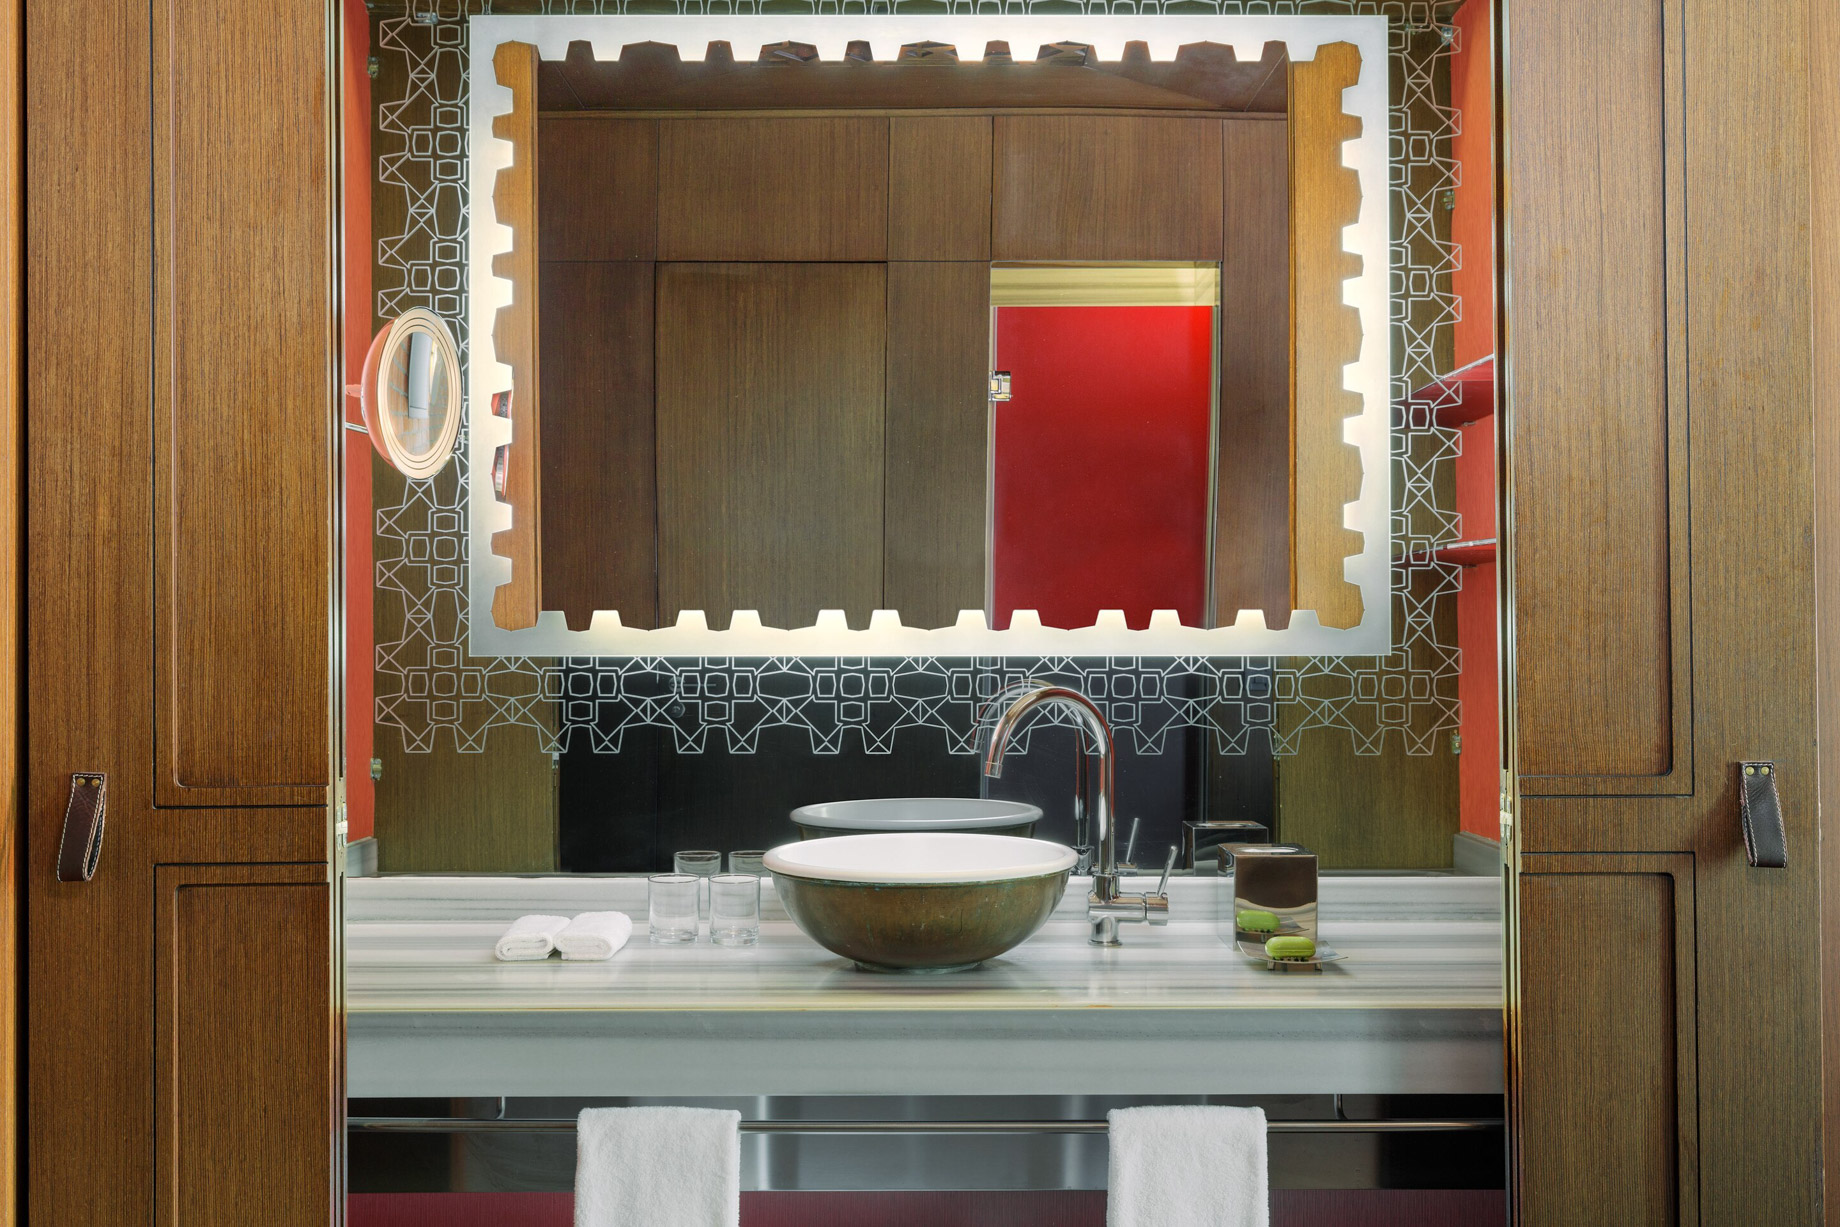 W Istanbul Hotel – Istanbul, Turkey – Guest Bathroom Vanity Decor